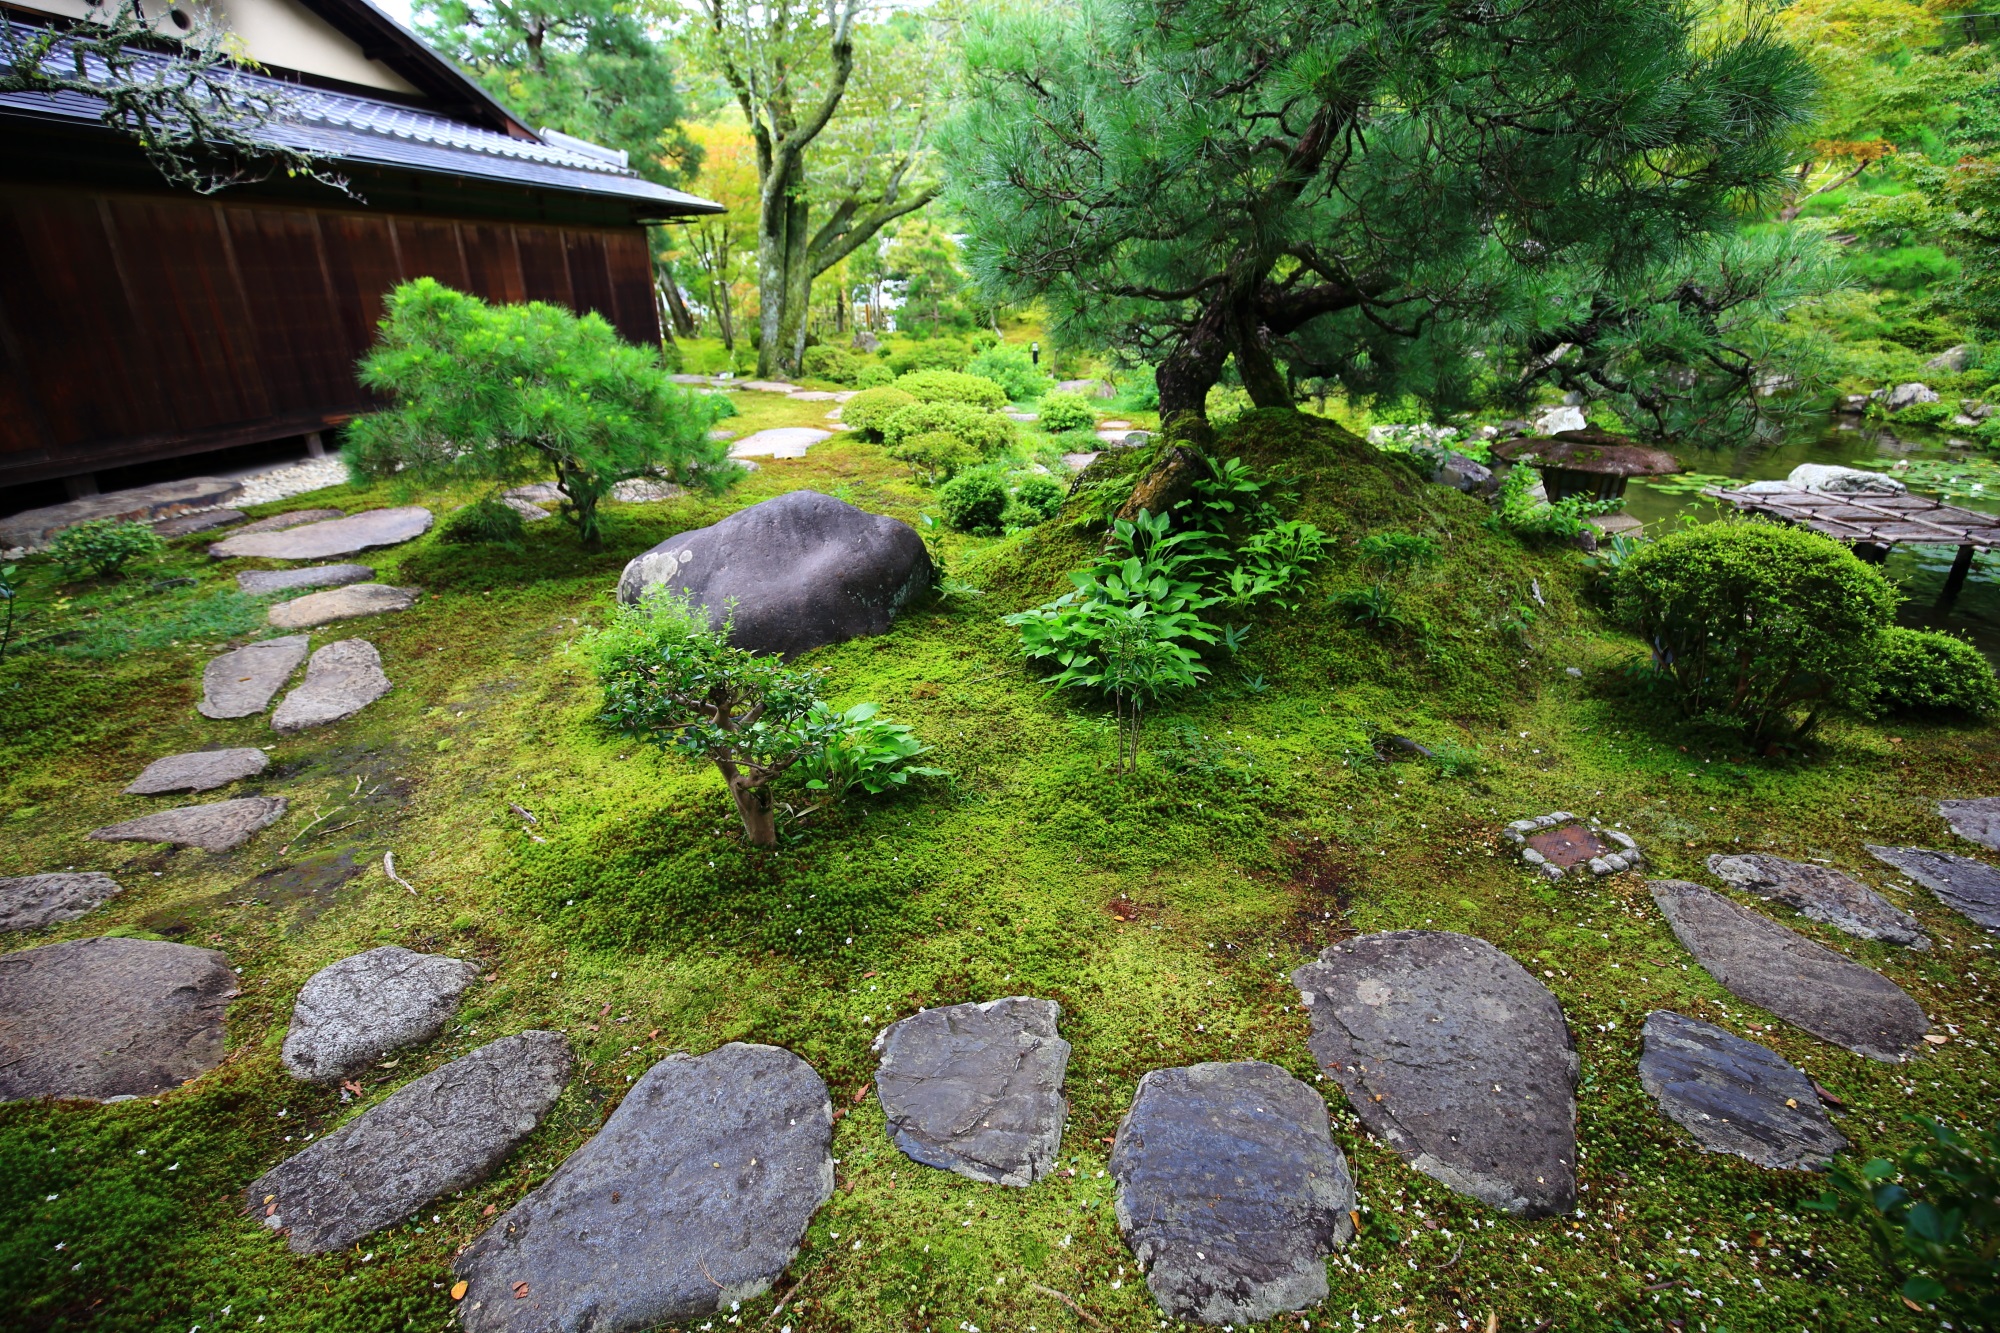 南禅寺大寧軒の池泉回遊式庭園の飛び石と苔